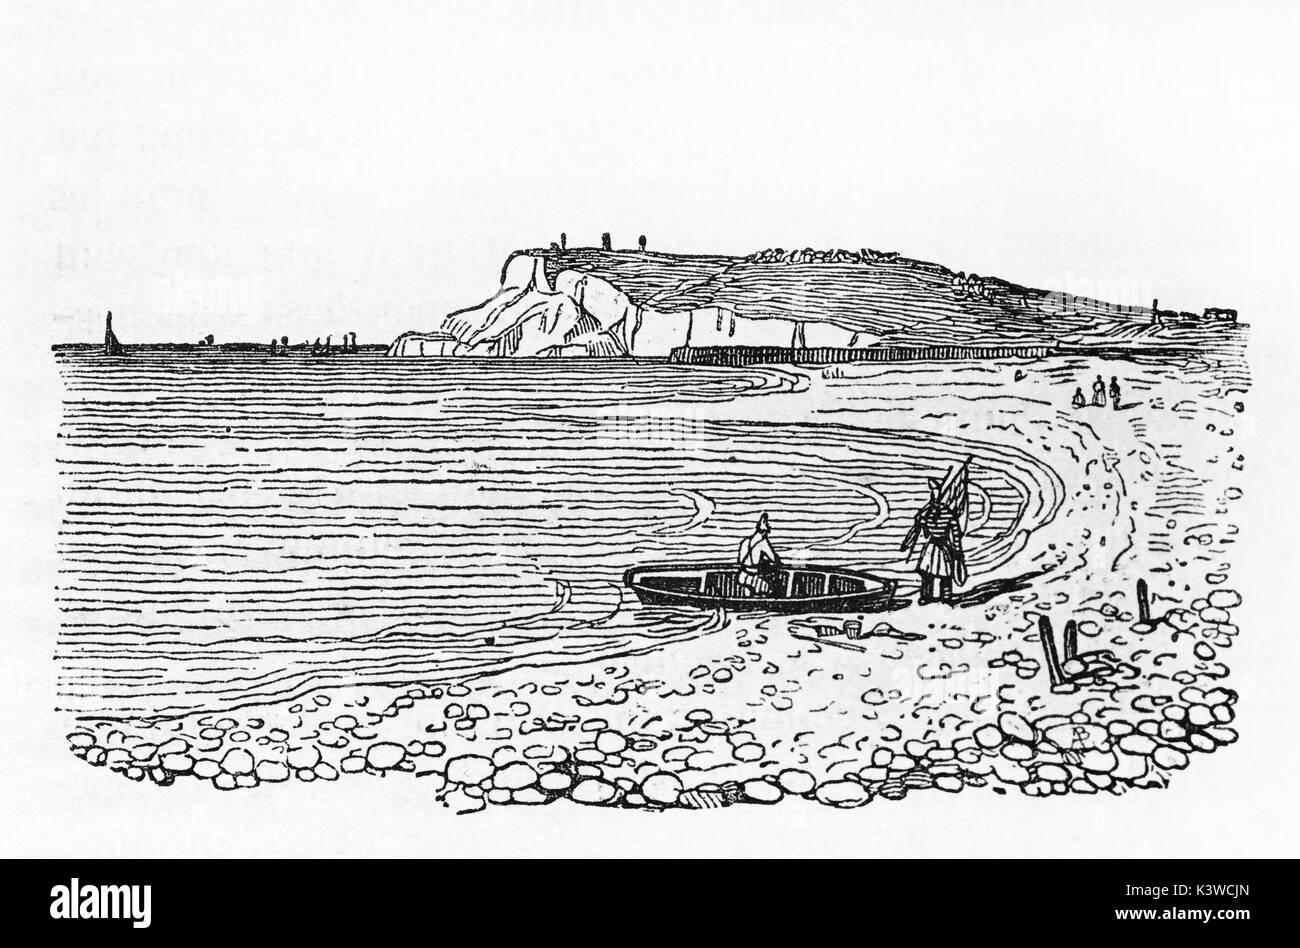 Alte Ansicht des Cap de la Hève, Normandie, Frankreich. Von nicht identifizierten Autor, veröffentlicht auf Magasin Pittoresque, Paris, 1841 Stockfoto